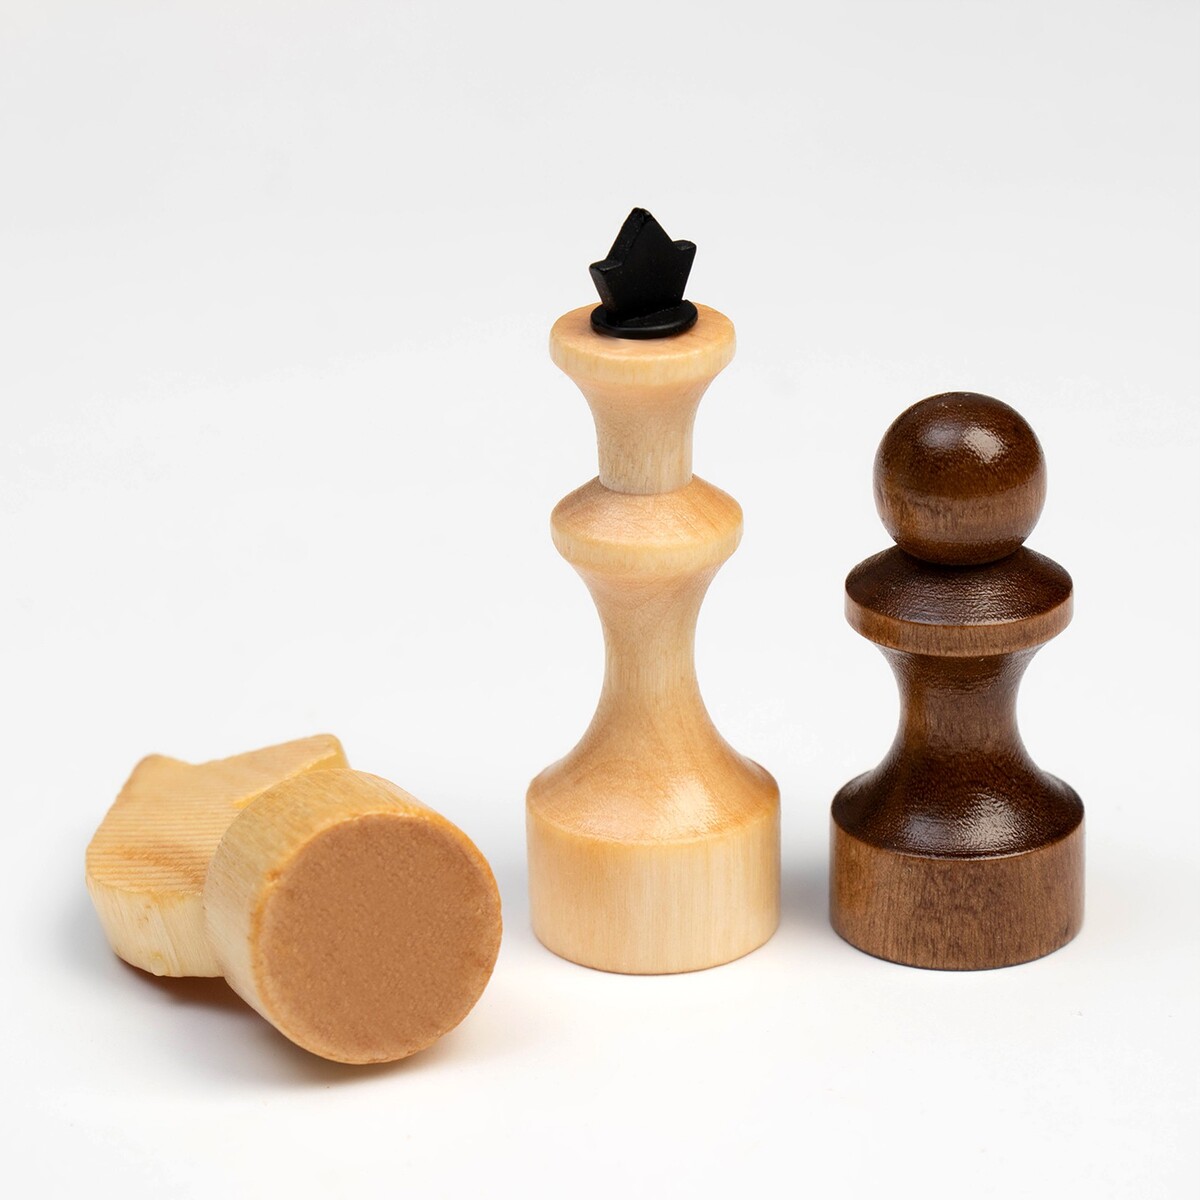 фото Шахматы деревянные обиходные 29 х 29 см, король h-7.2 см, пешка h-4.5 см no brand